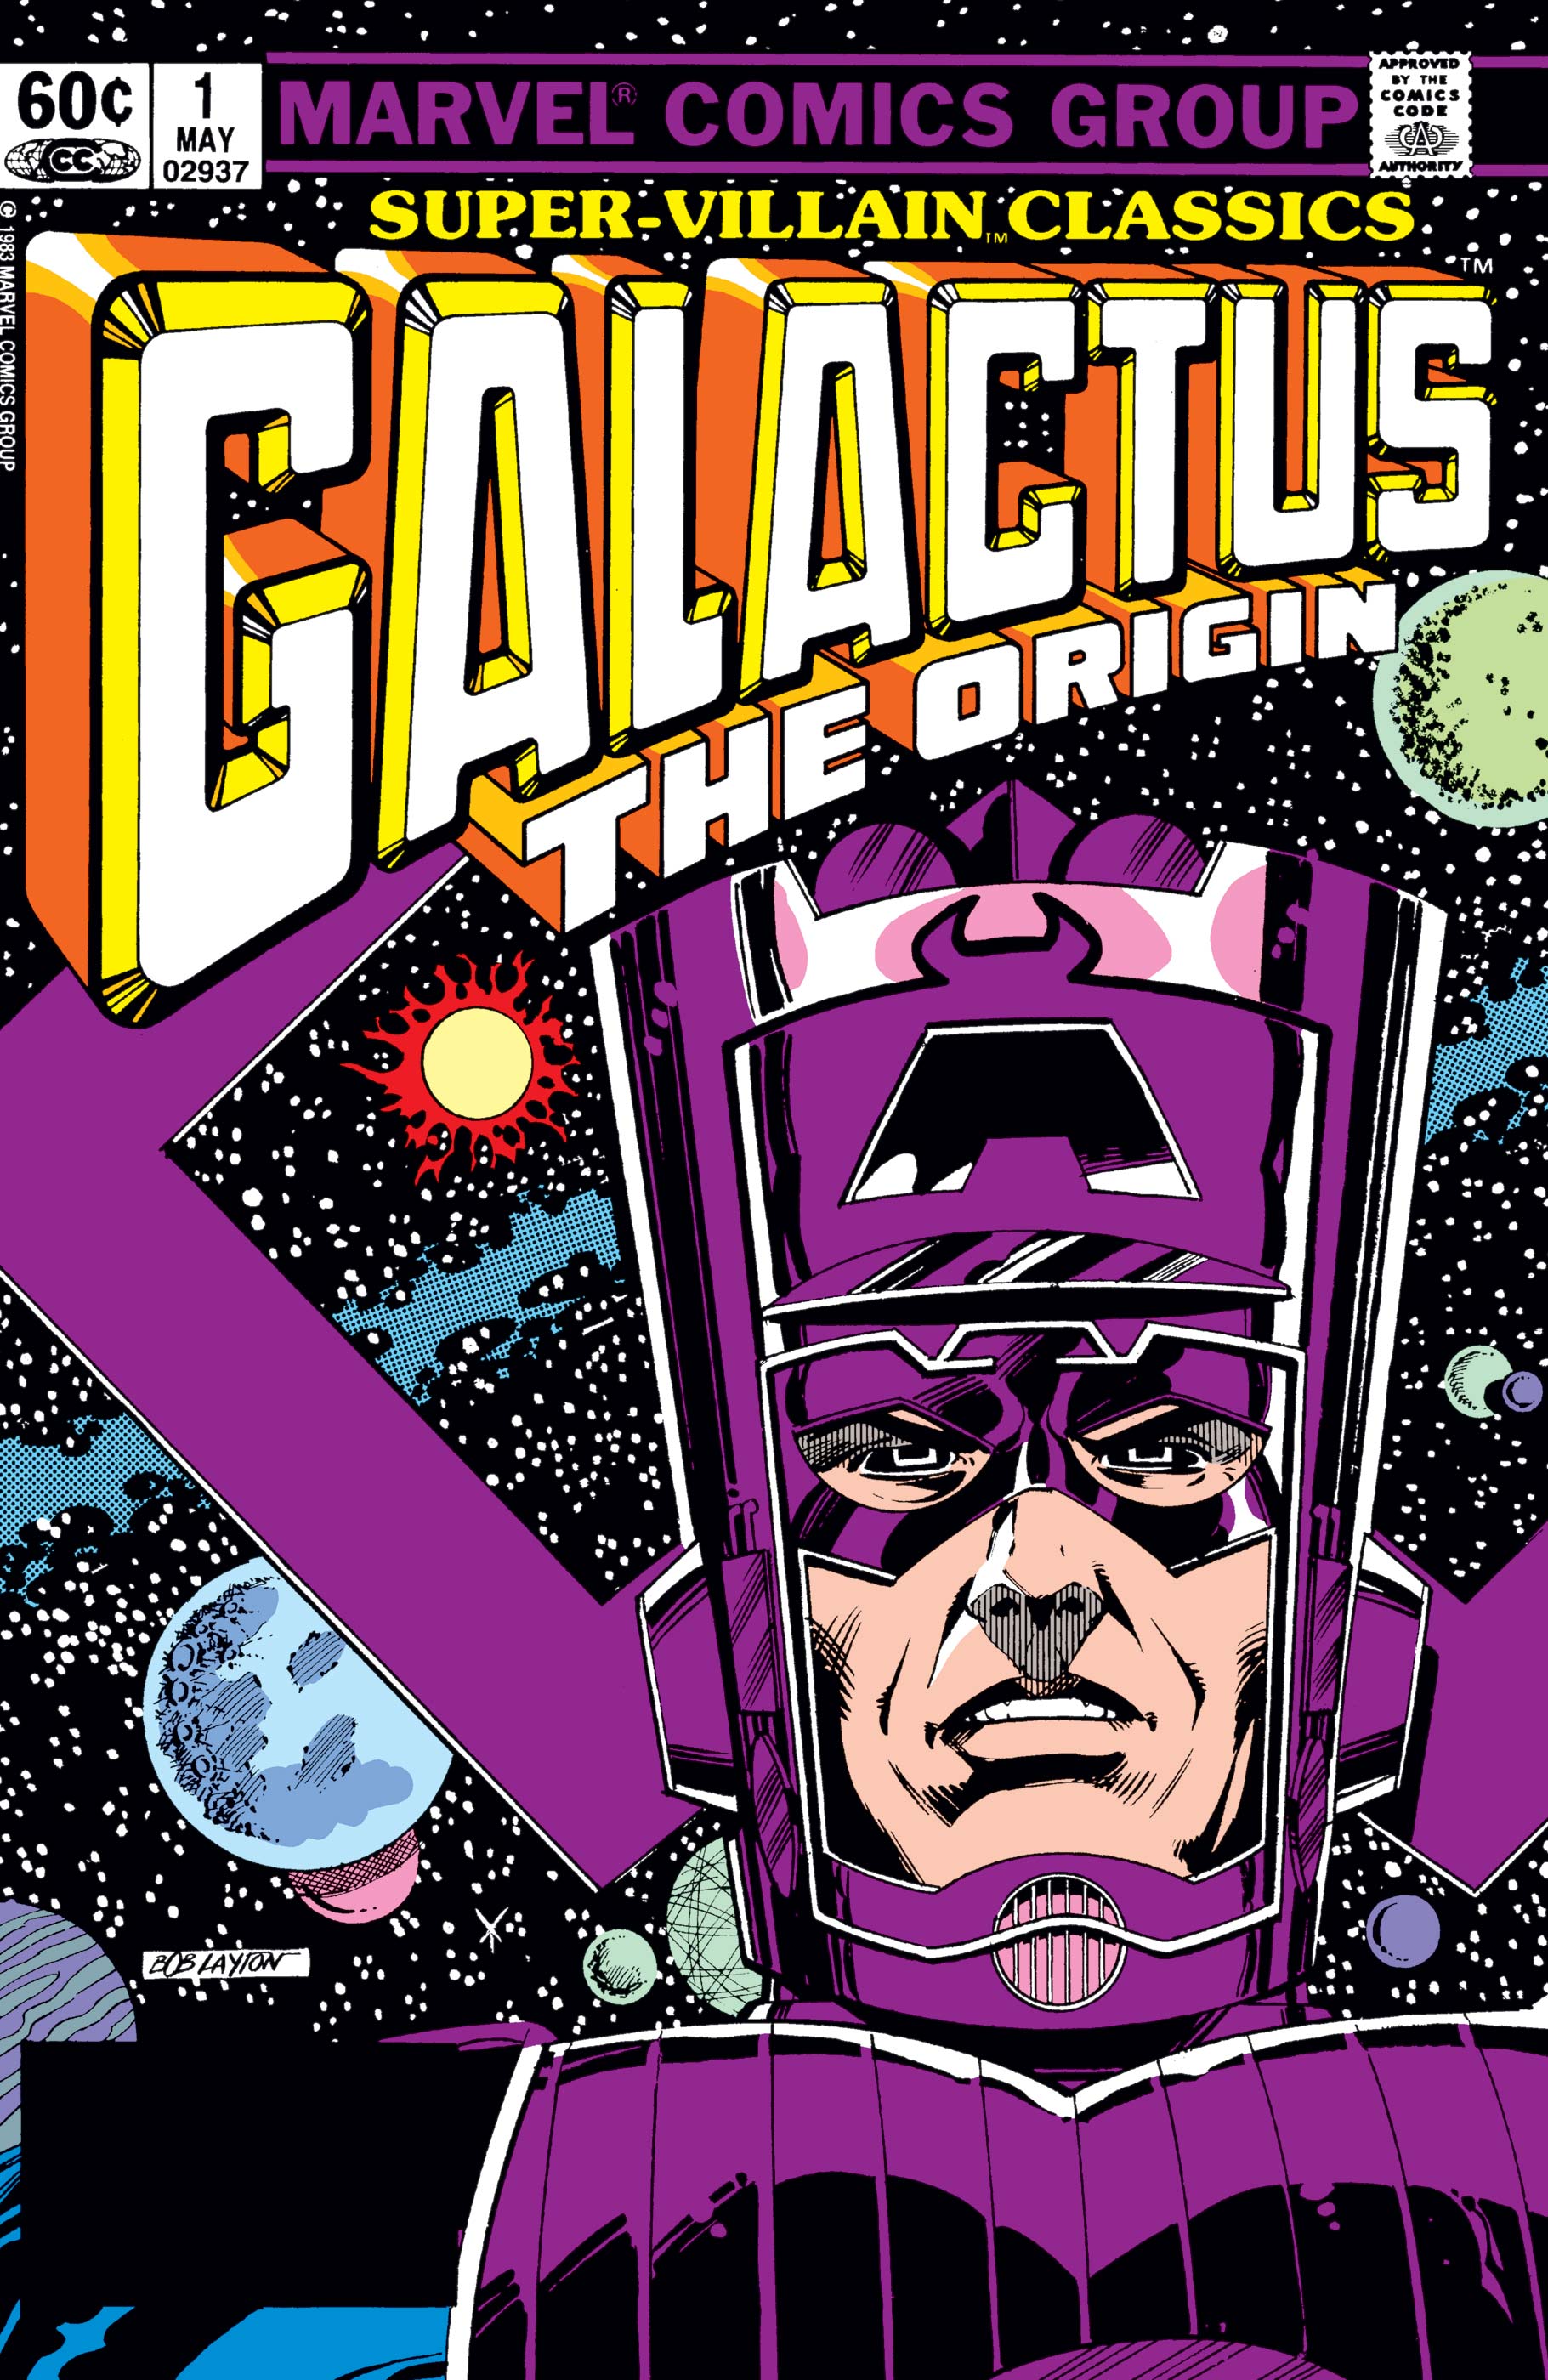 Galactus the origin